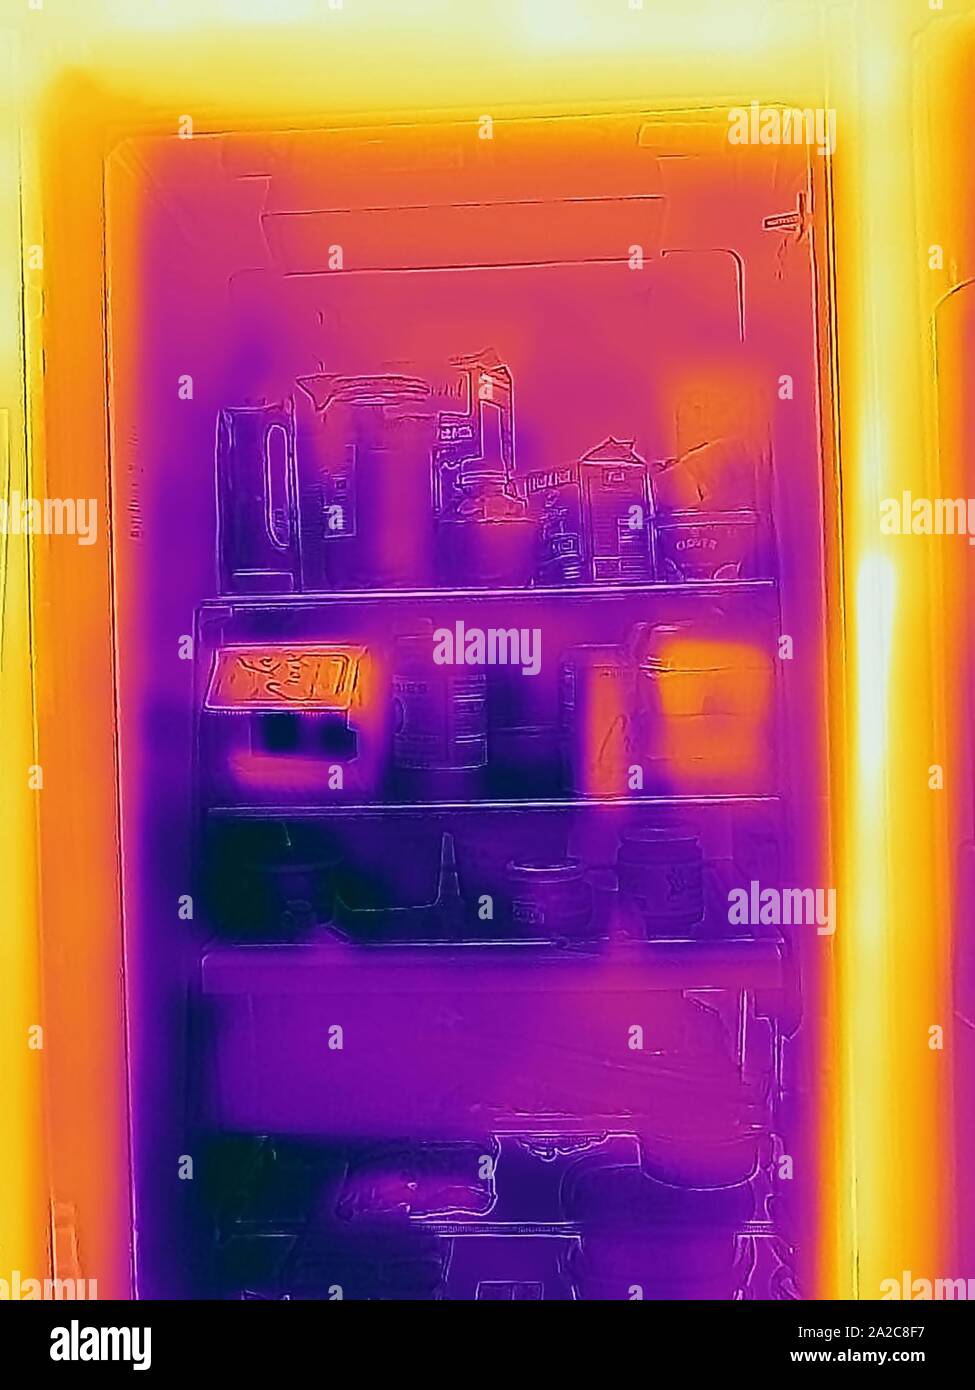 Thermografiebild der Wärmebildkamera, mit Lichtbereichen, die höheren Temperaturen entsprechen und heiße und kalte Stellen in einem Küchenkühlschrank in San Ramon, Kalifornien, September 2019 zeigen. () Stockfoto